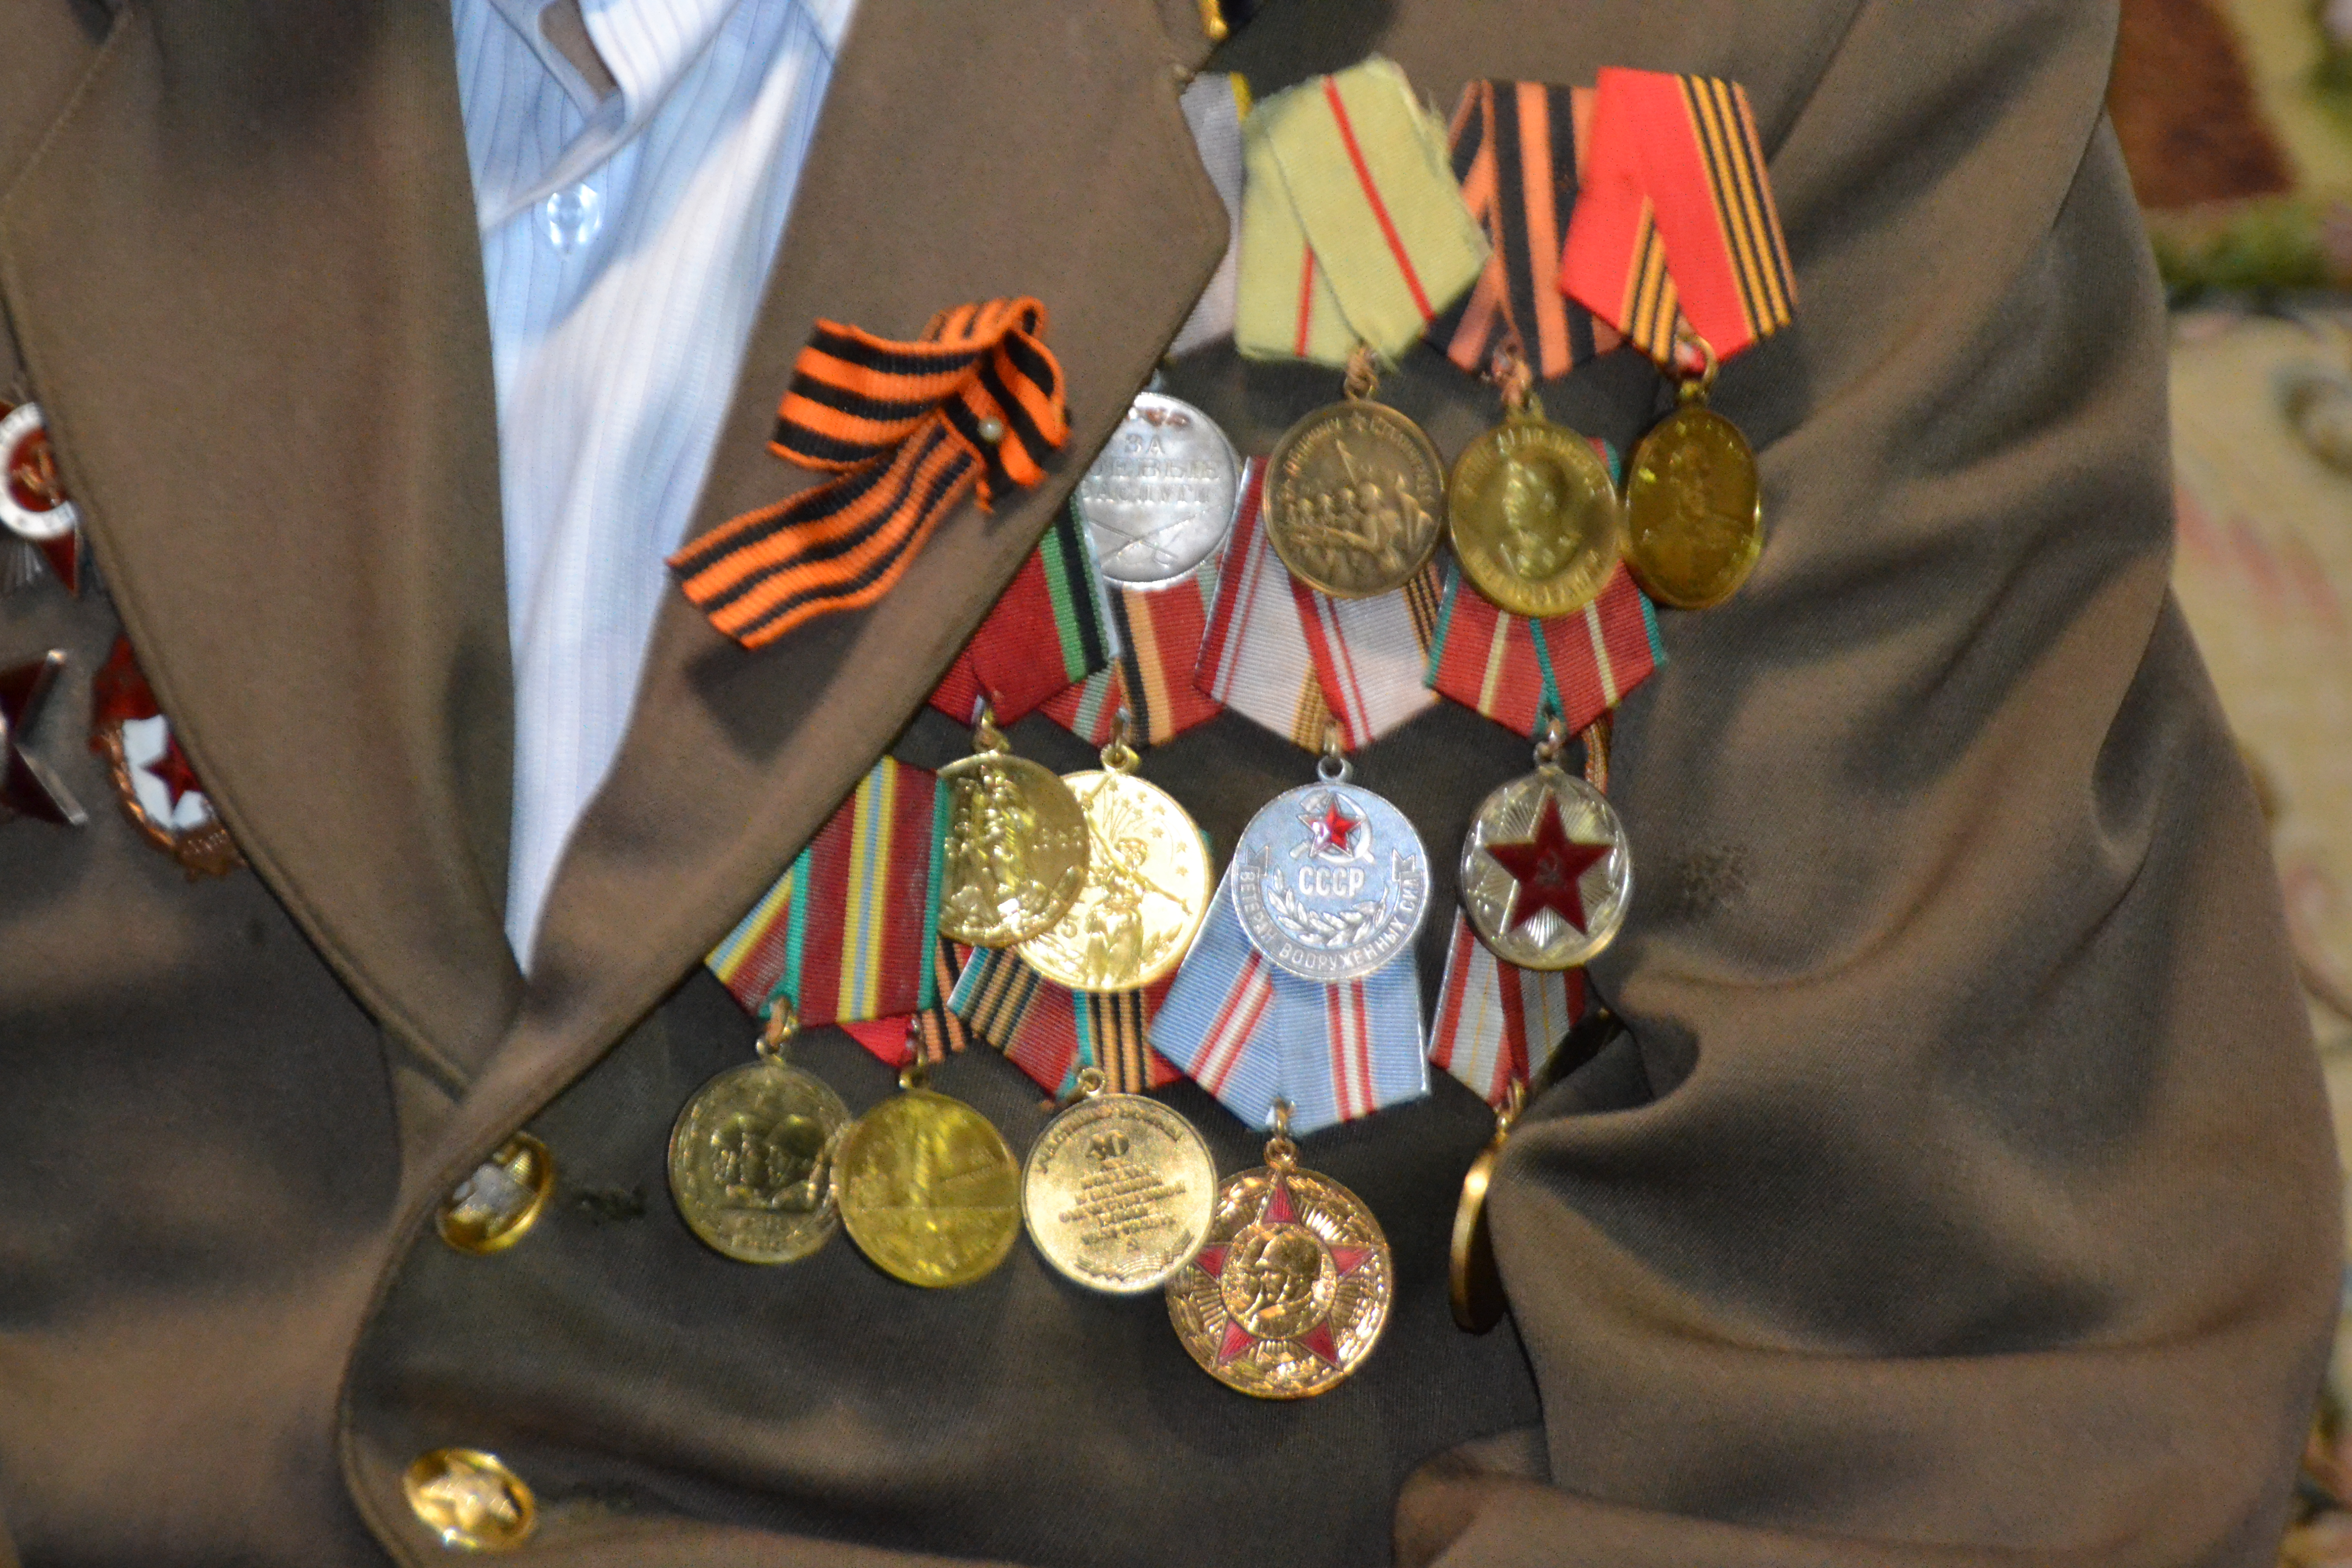 Ветеранов Великой Отечественной войны поздравляют с наступающим Новым Годом – Годом памяти и славы 